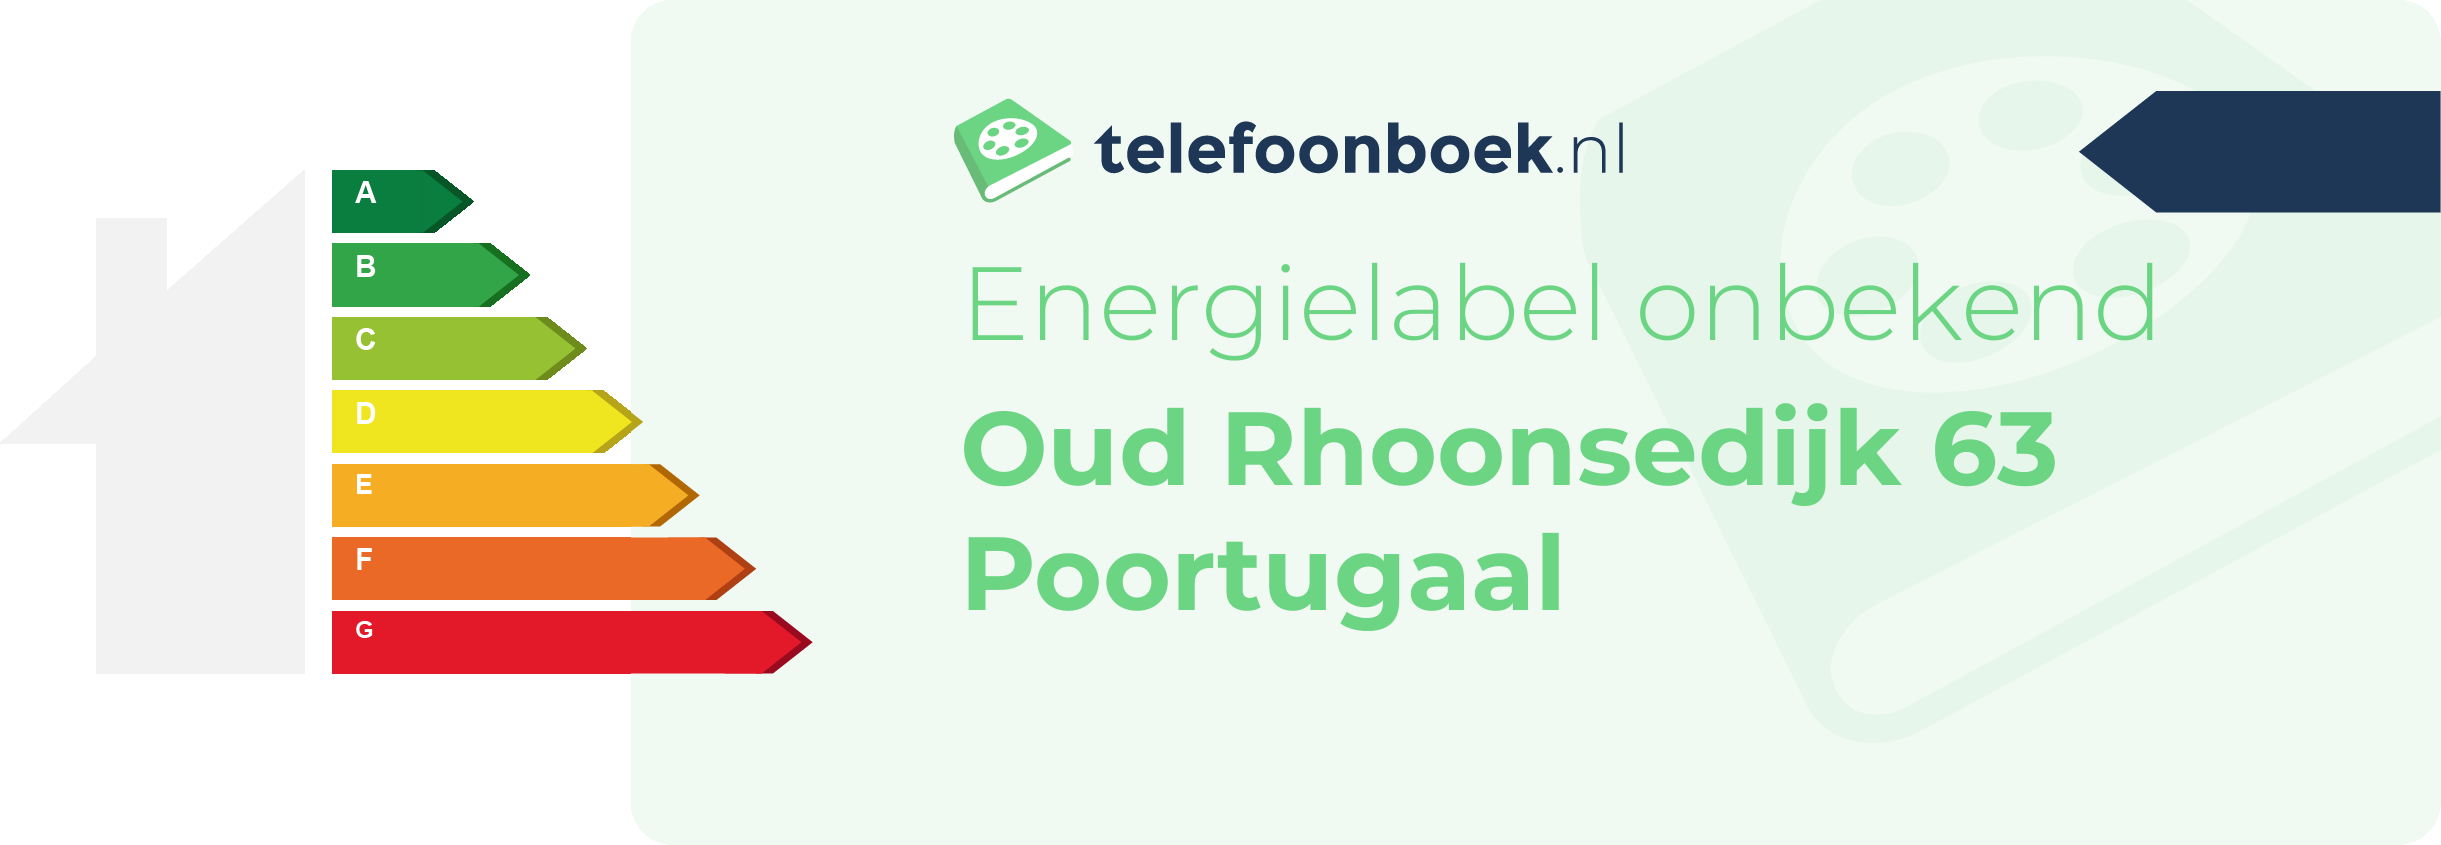 Energielabel Oud Rhoonsedijk 63 Poortugaal